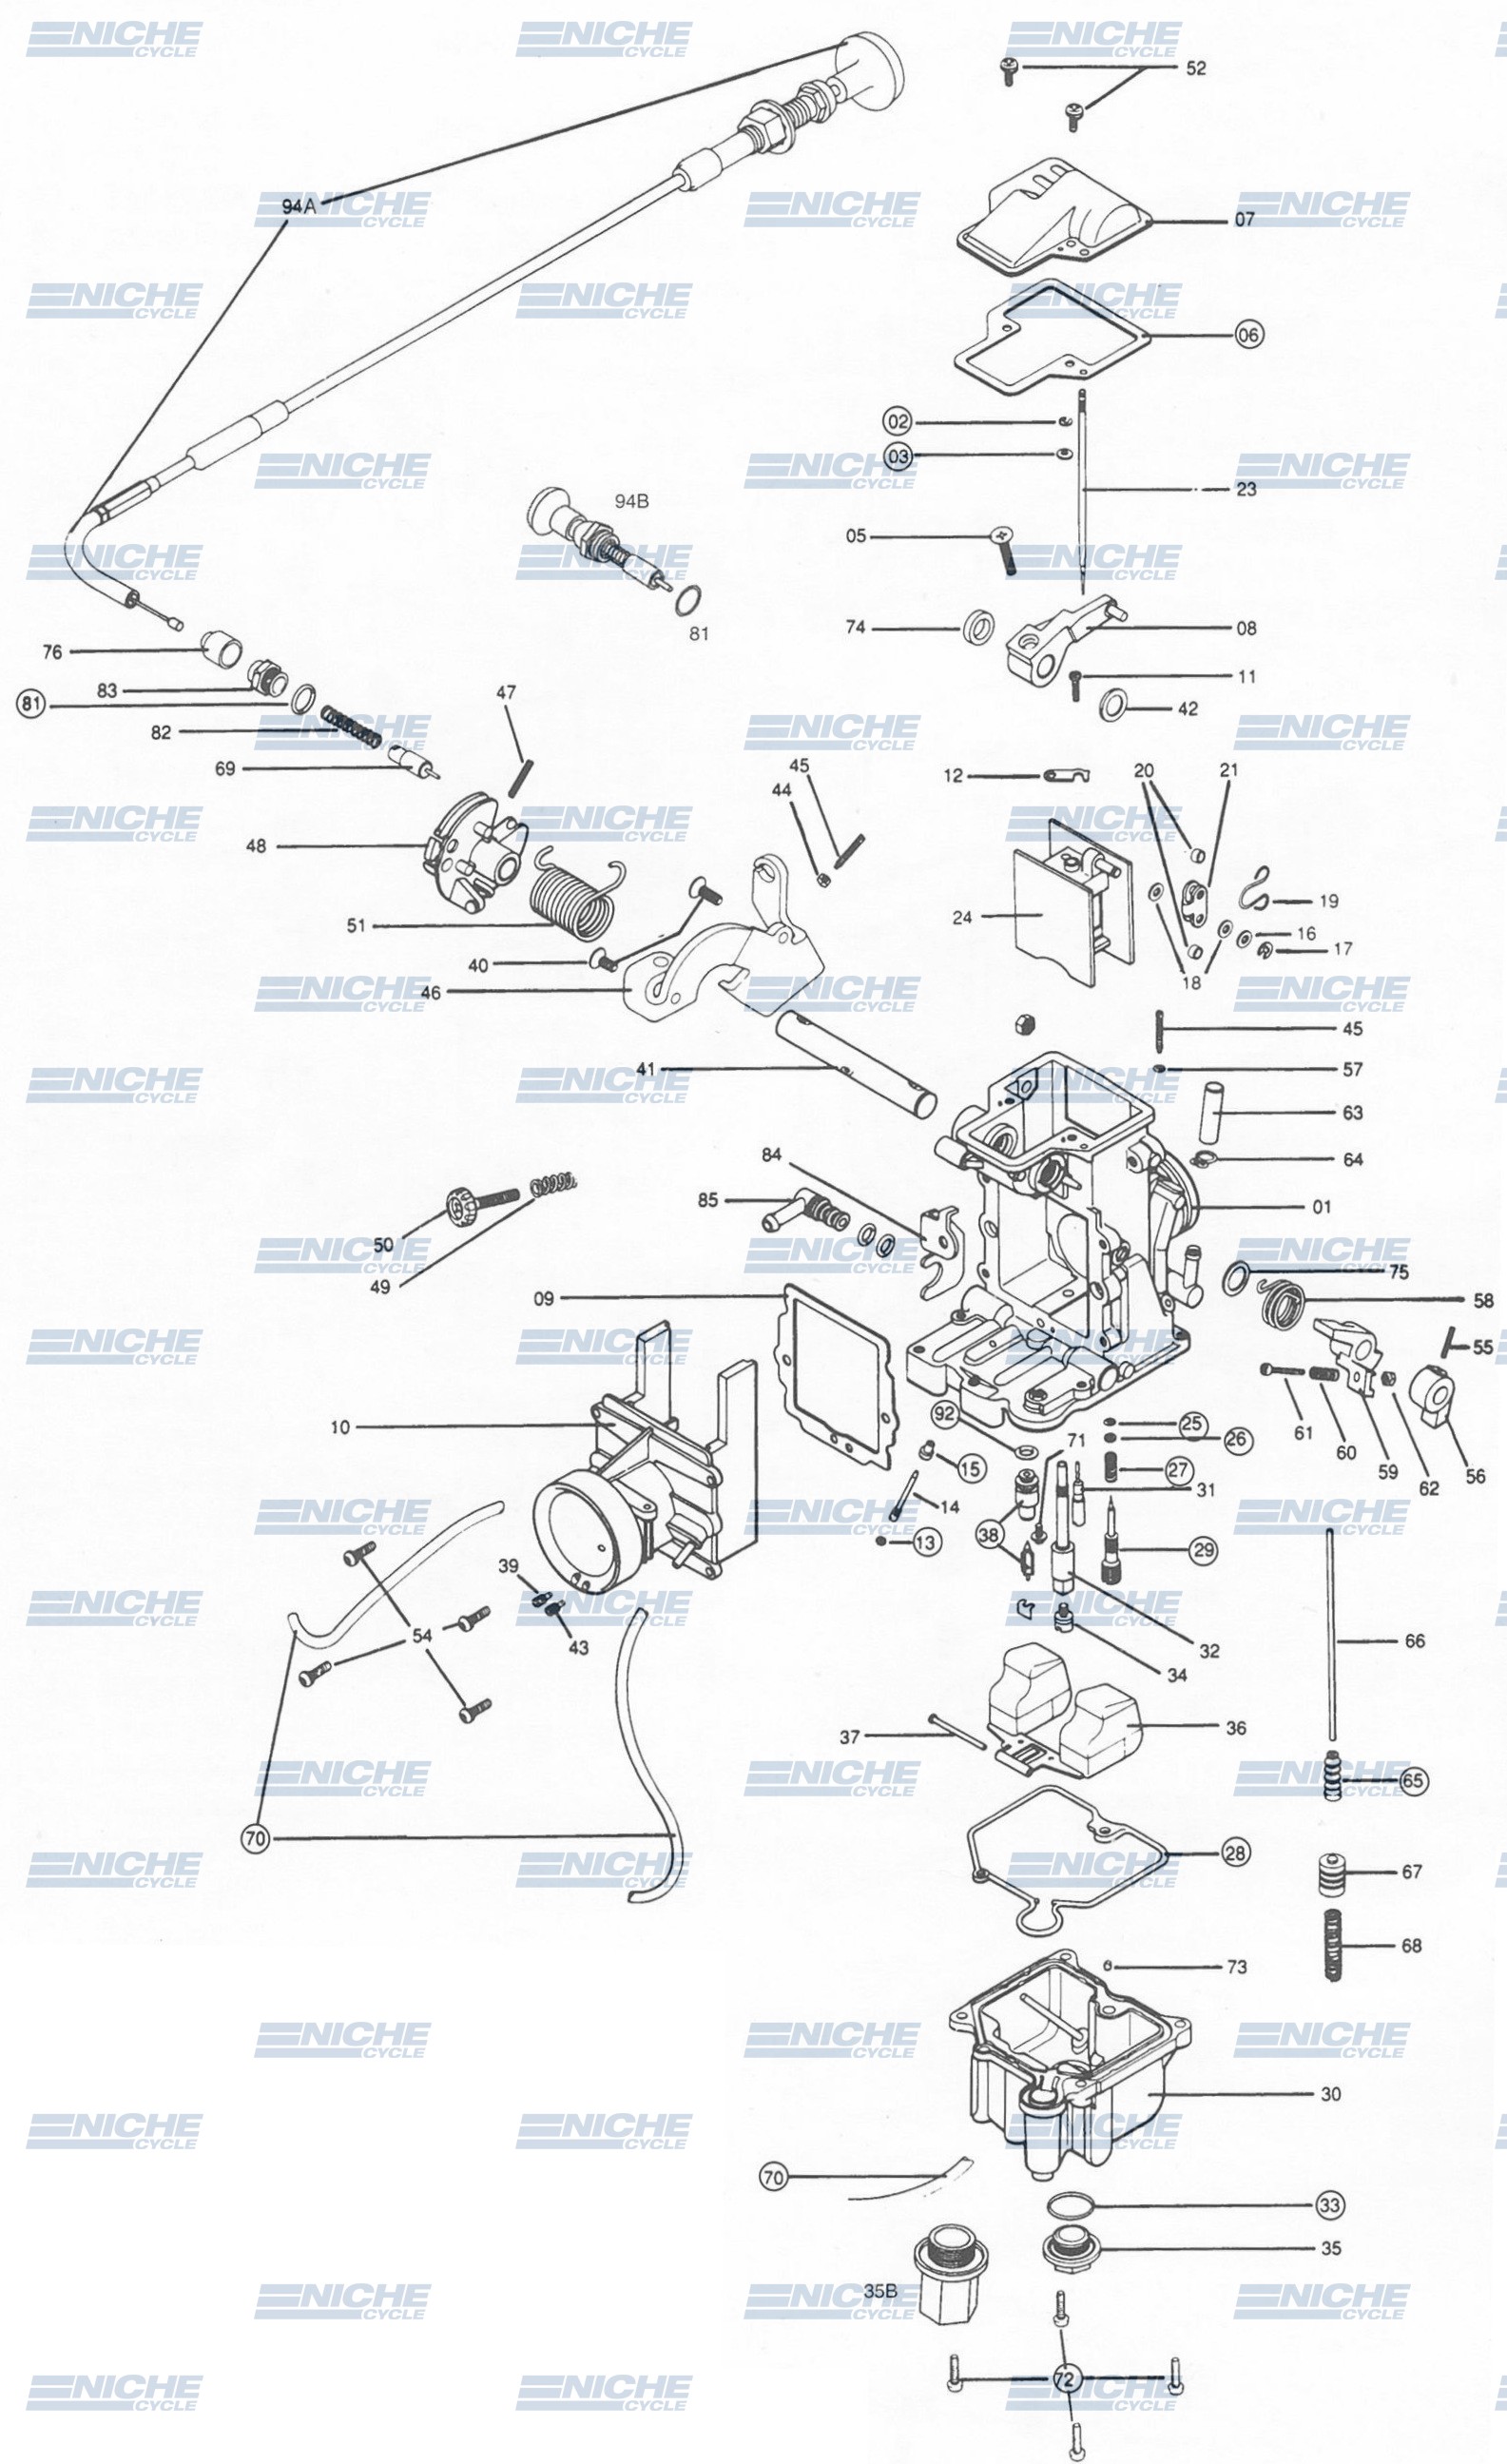 Mikuni TM36-68 Exploded View - Replacement Parts Listing TM36-68_parts_list